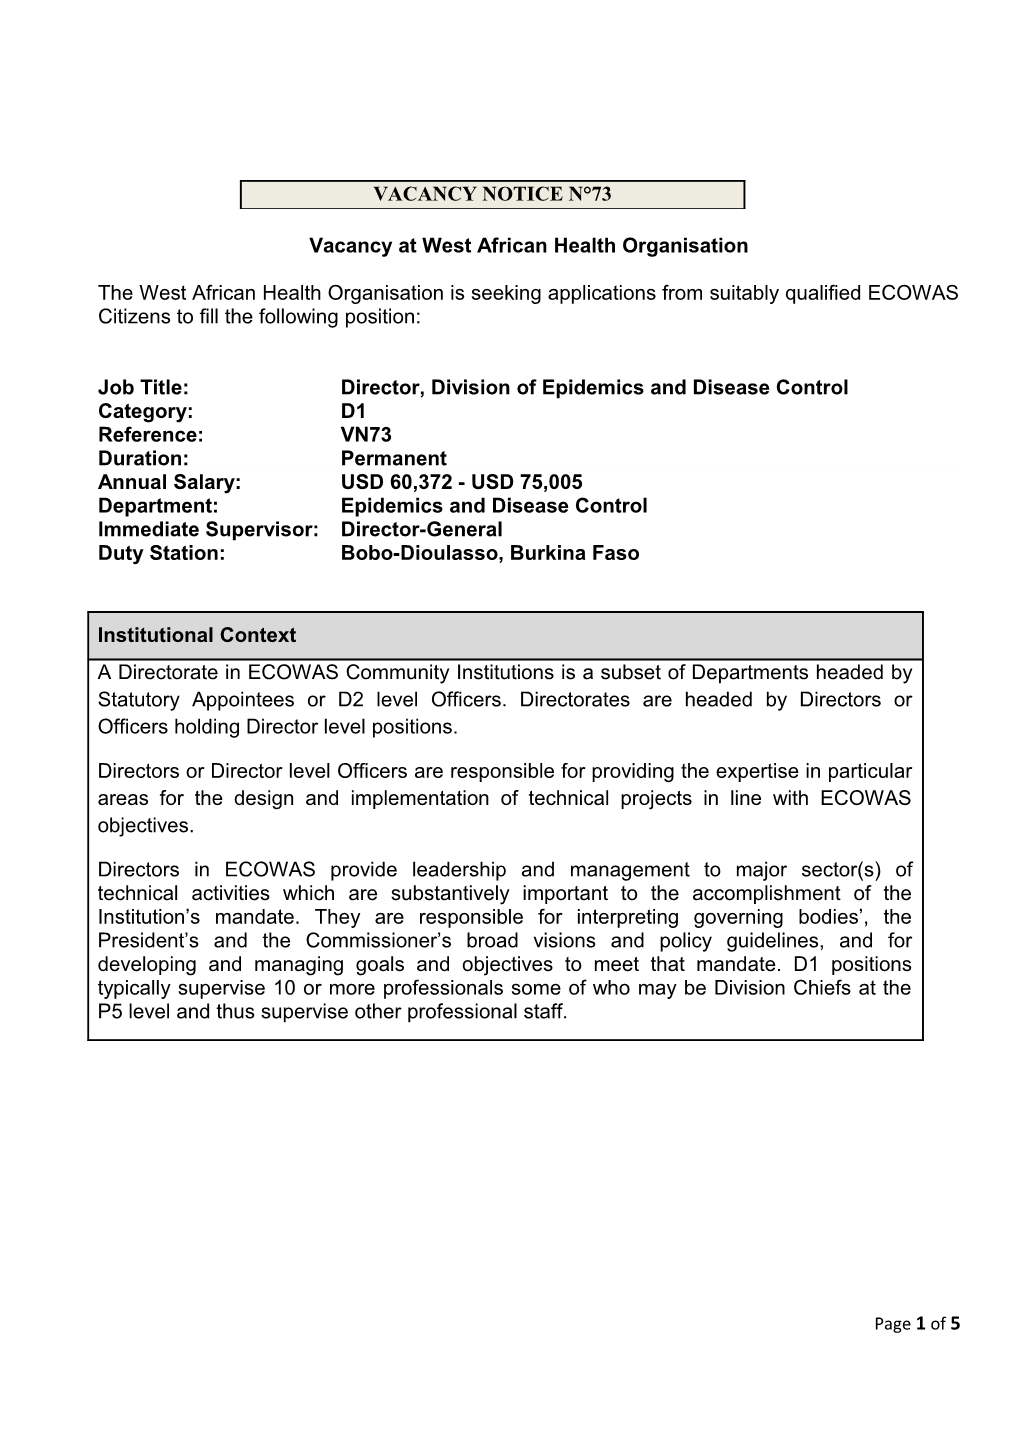 Vacancyat West African Health Organisation